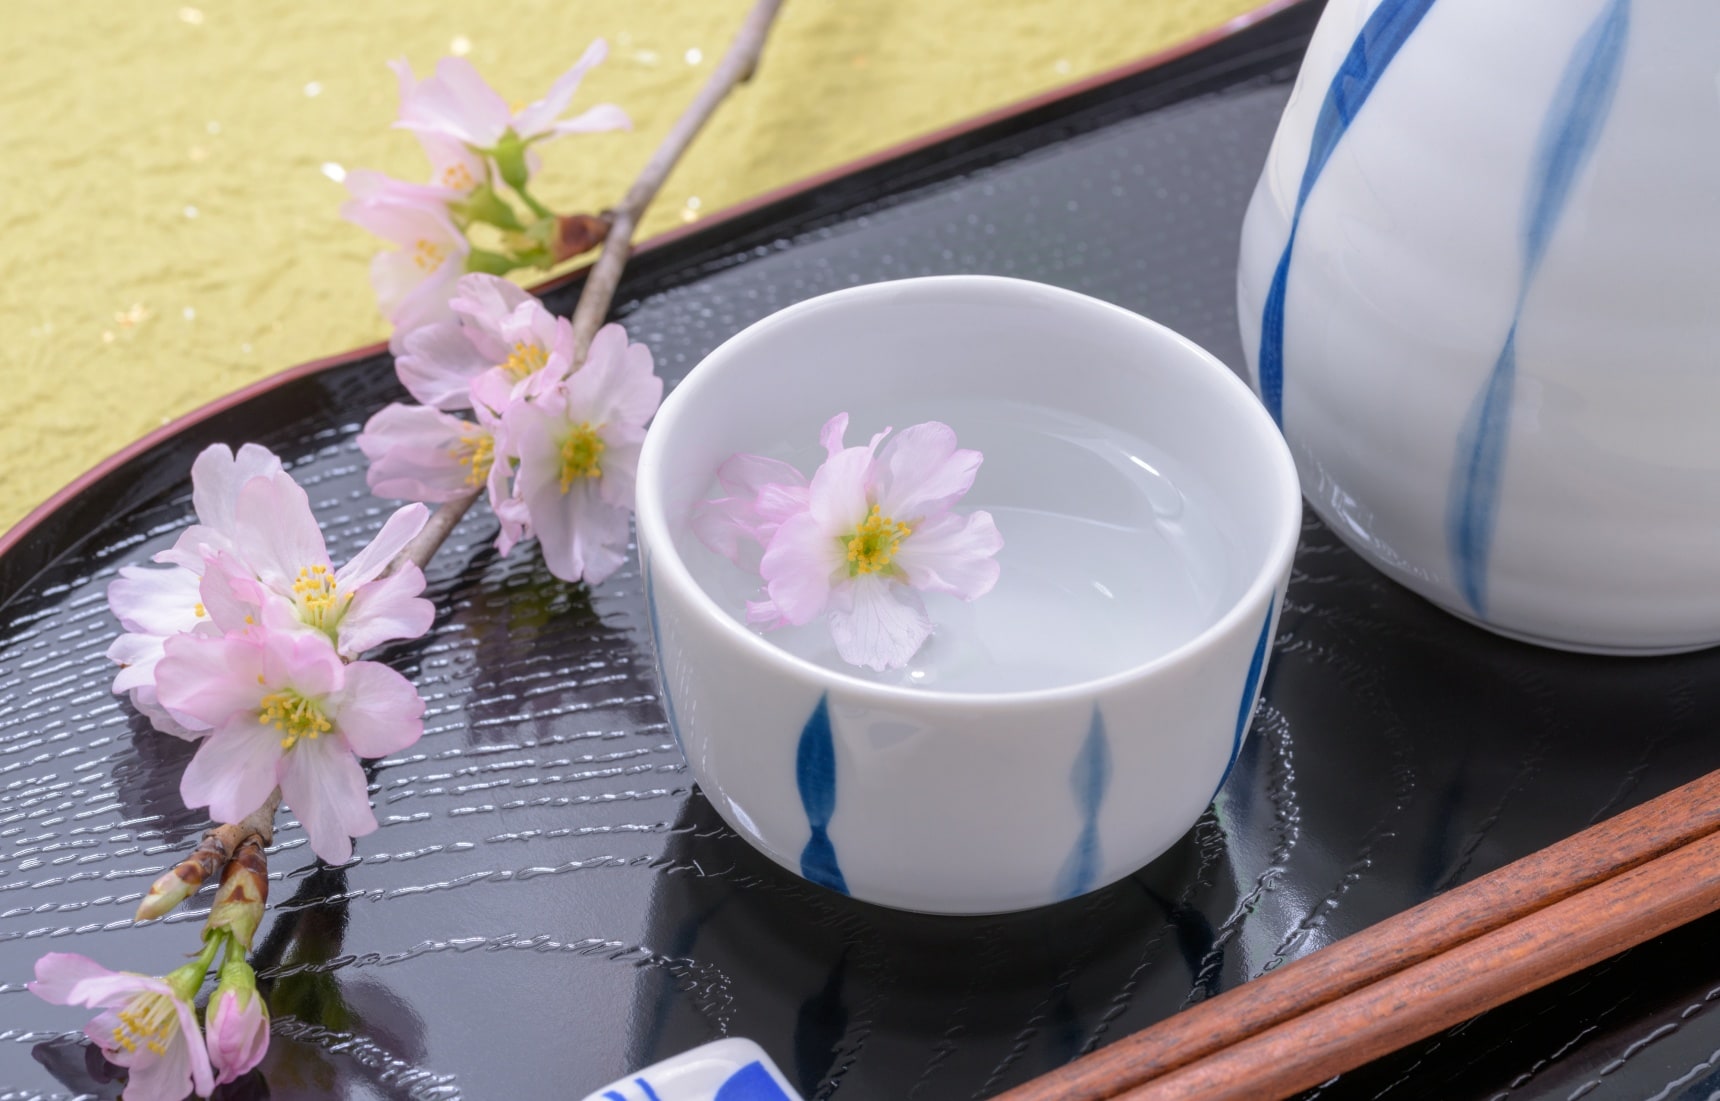 梨，蜜瓜，鲜牛奶 | 樱花季绝配——三款春限定日本酒